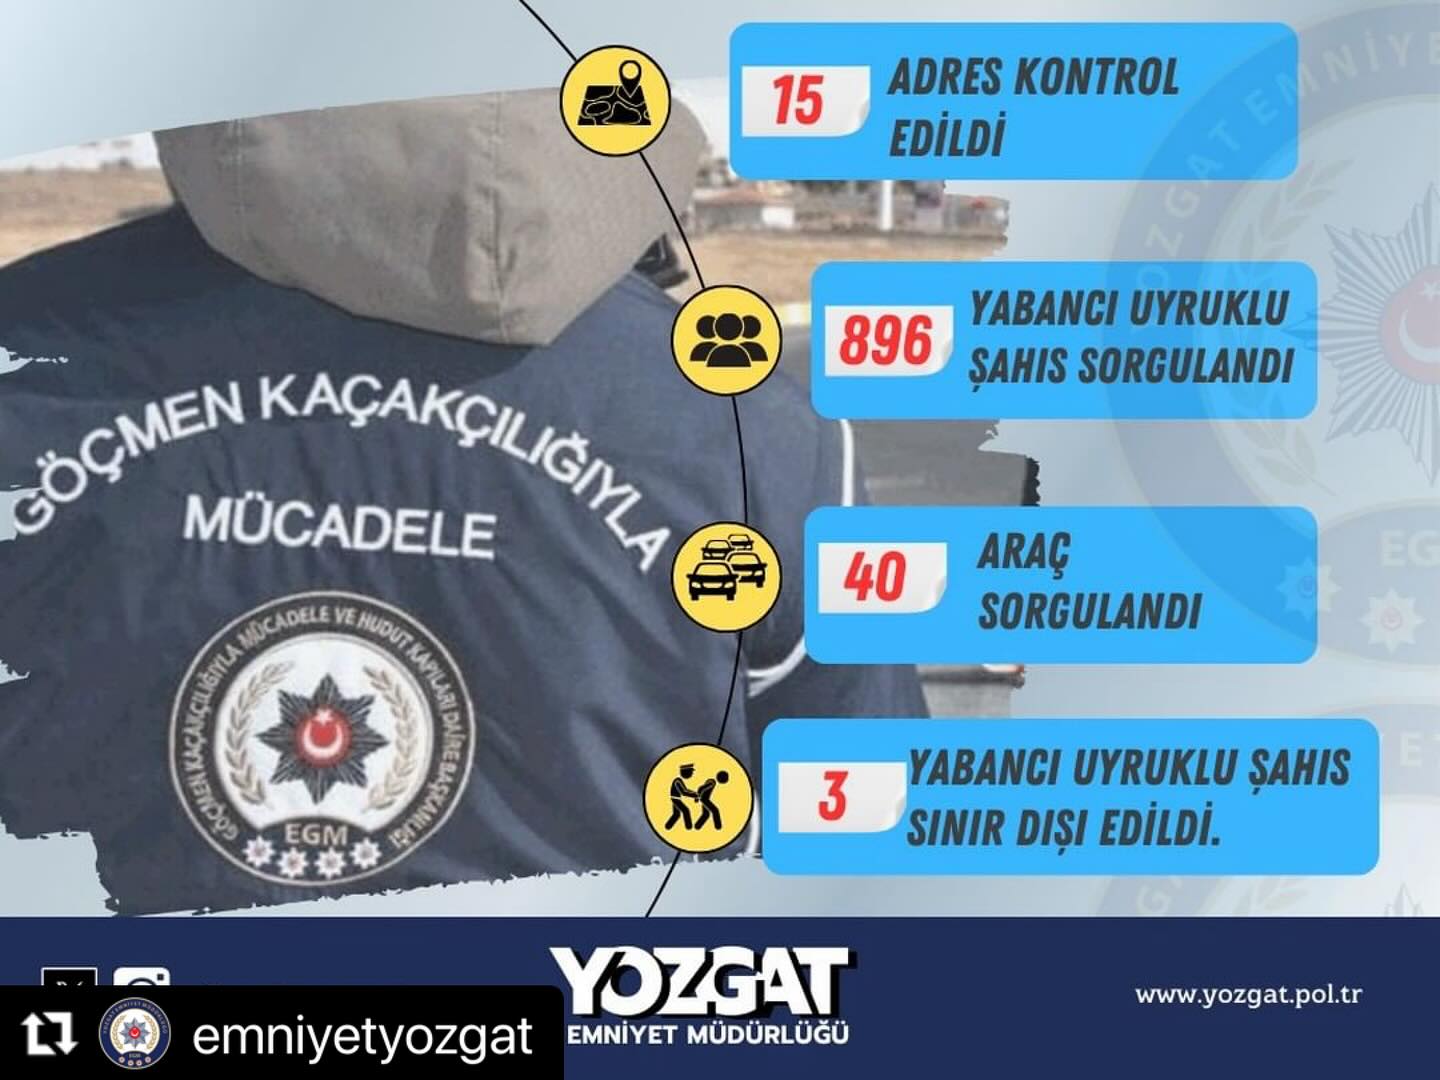 Yozgat İl Emniyet Müdürlüğü, Göçmen Kaçakçılığıyla Mücadele ve Hudut Kapıları Şube Müdürlüğü ekipleri önemli operasyonlar gerçekleştirdi.